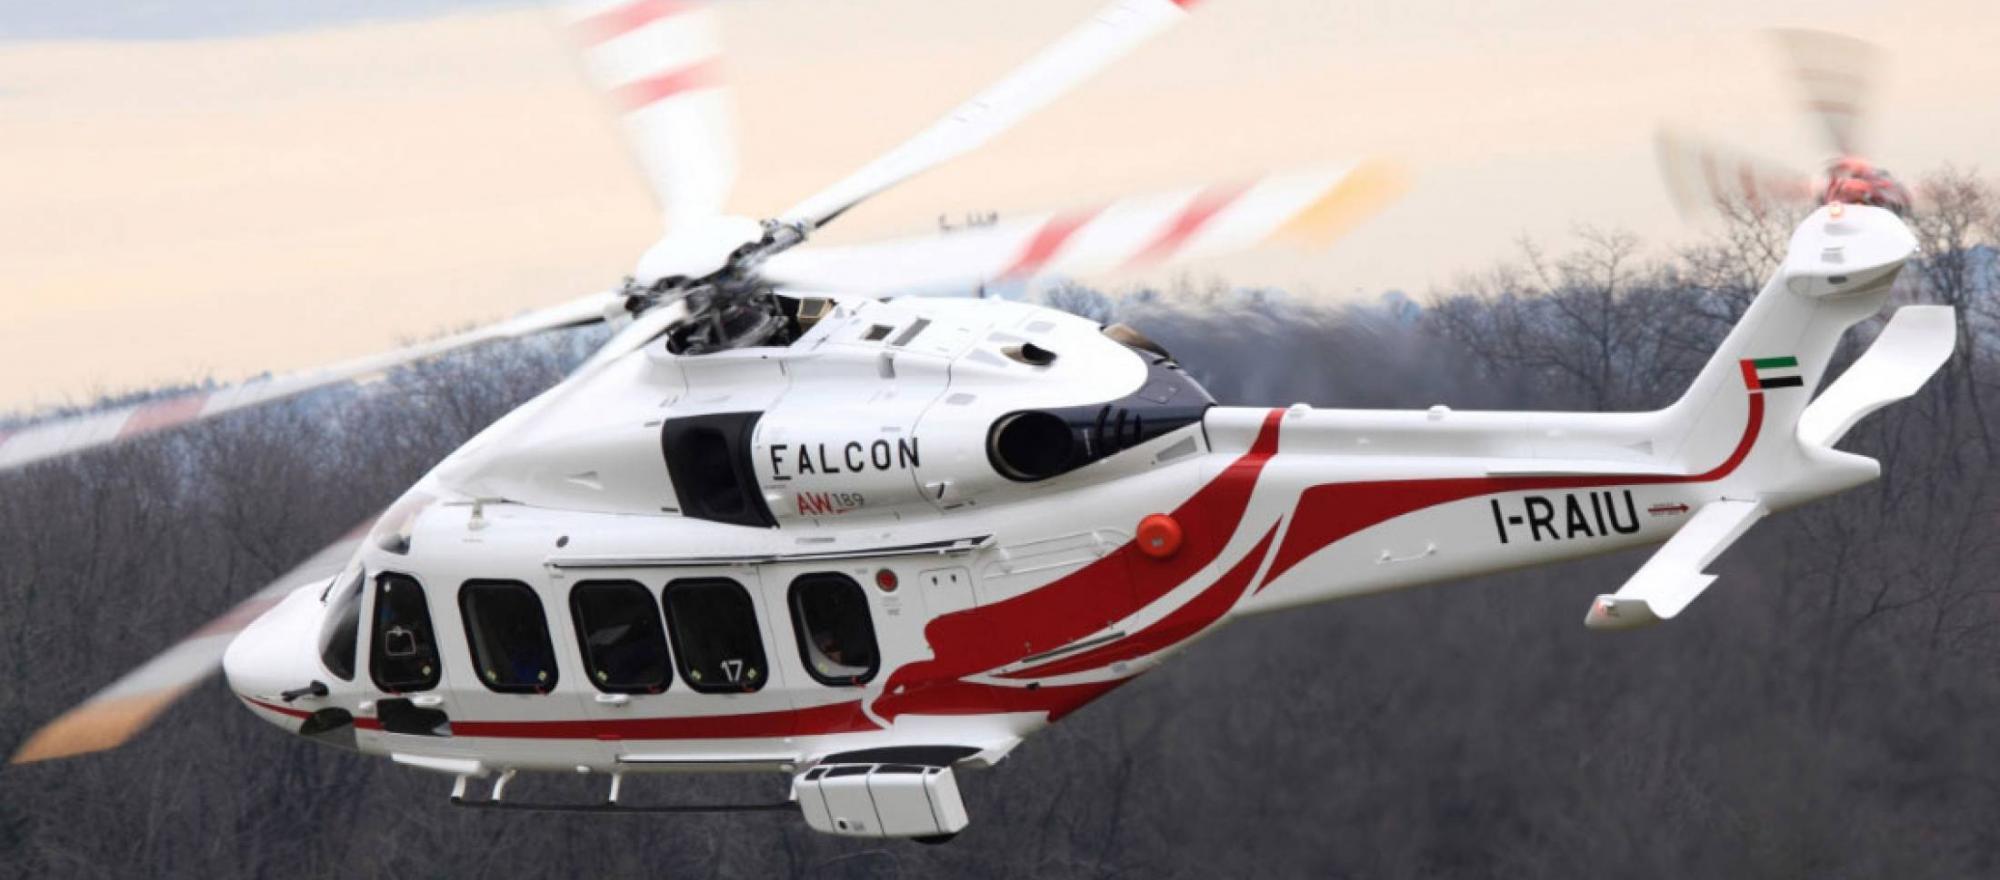 Leonardo Helicopters Logo - Leonardo Helicopters | Business Jet Traveler